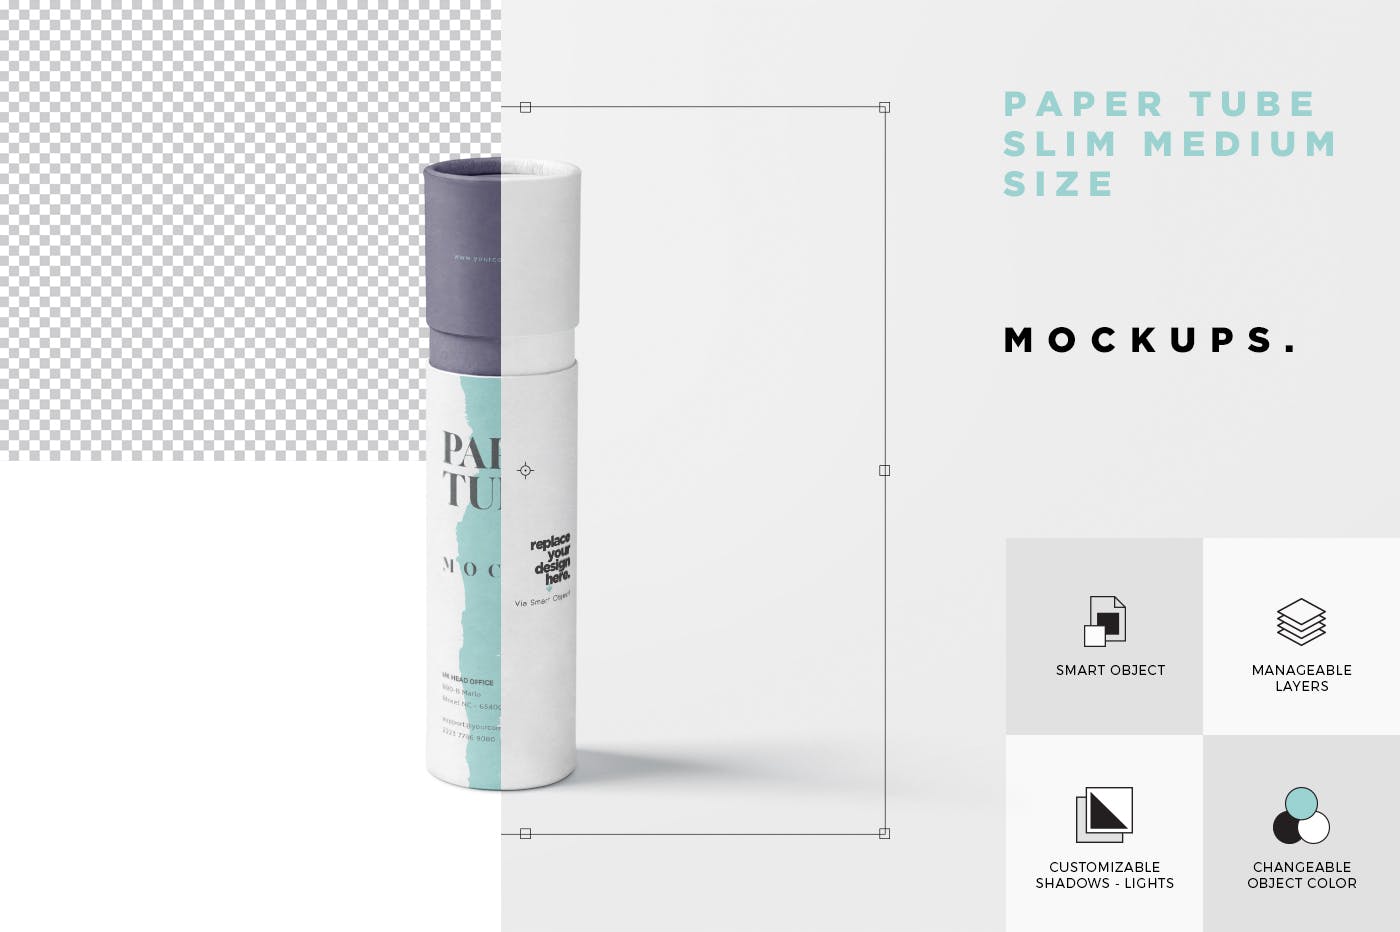 长纸管包装外观设计大洋岛精选模板 Paper Tube Mockup Set – Slim Medium Size插图6